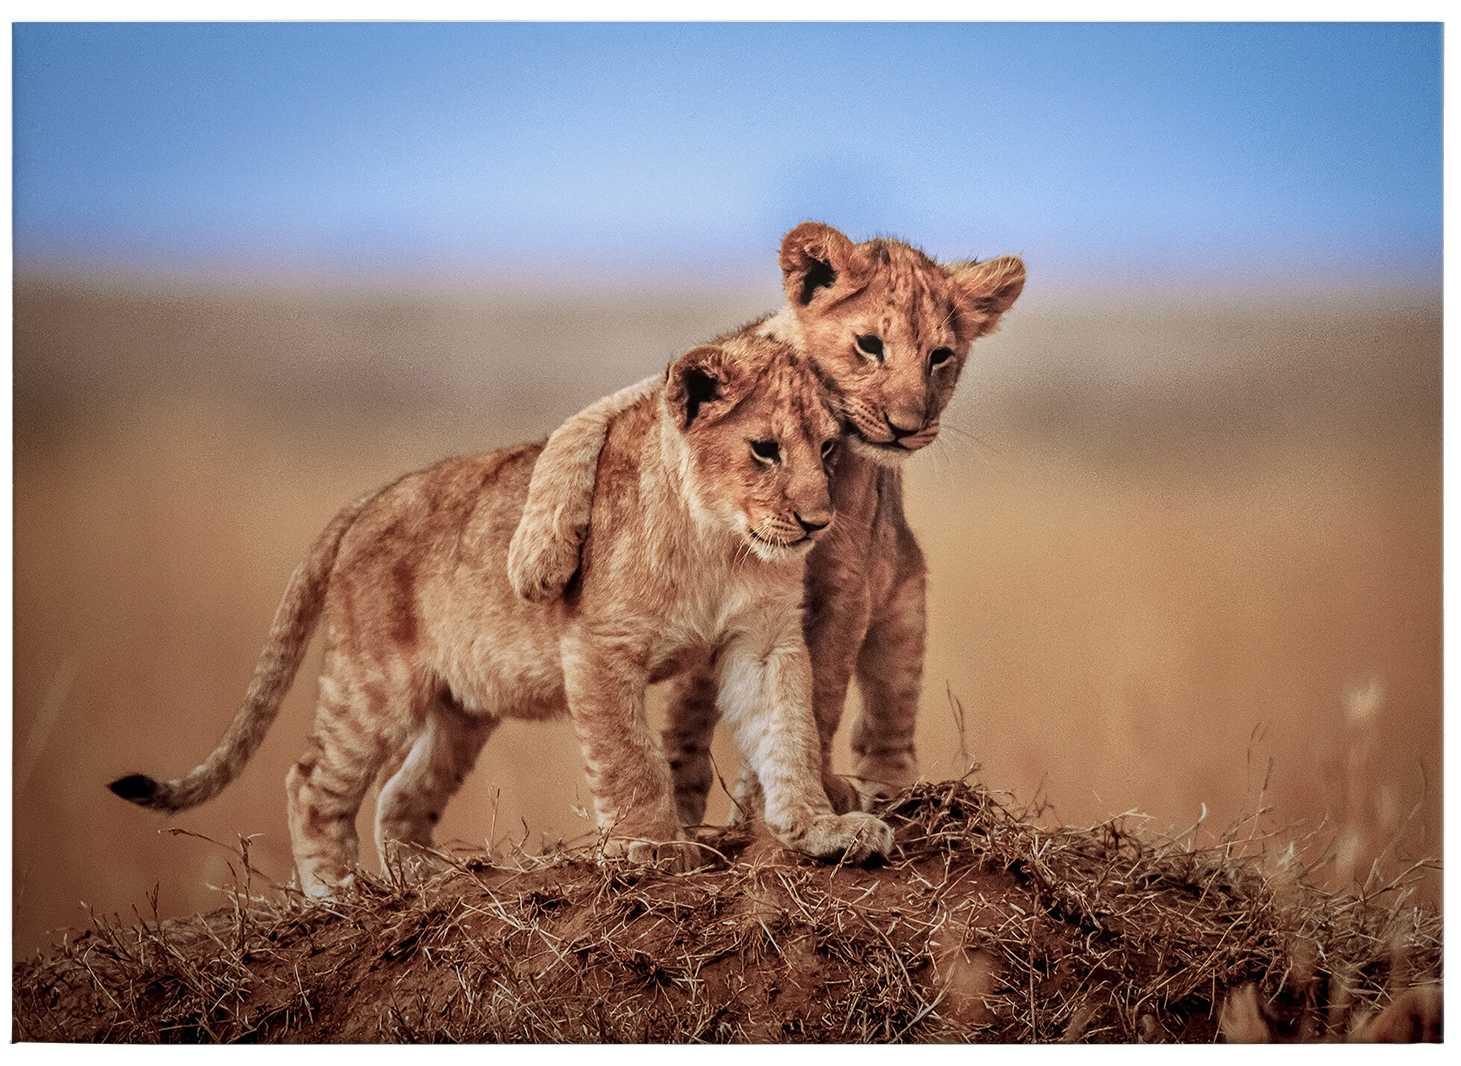             Tableau toile Lions enfants dans la nature - 0,70 m x 0,50 m
        